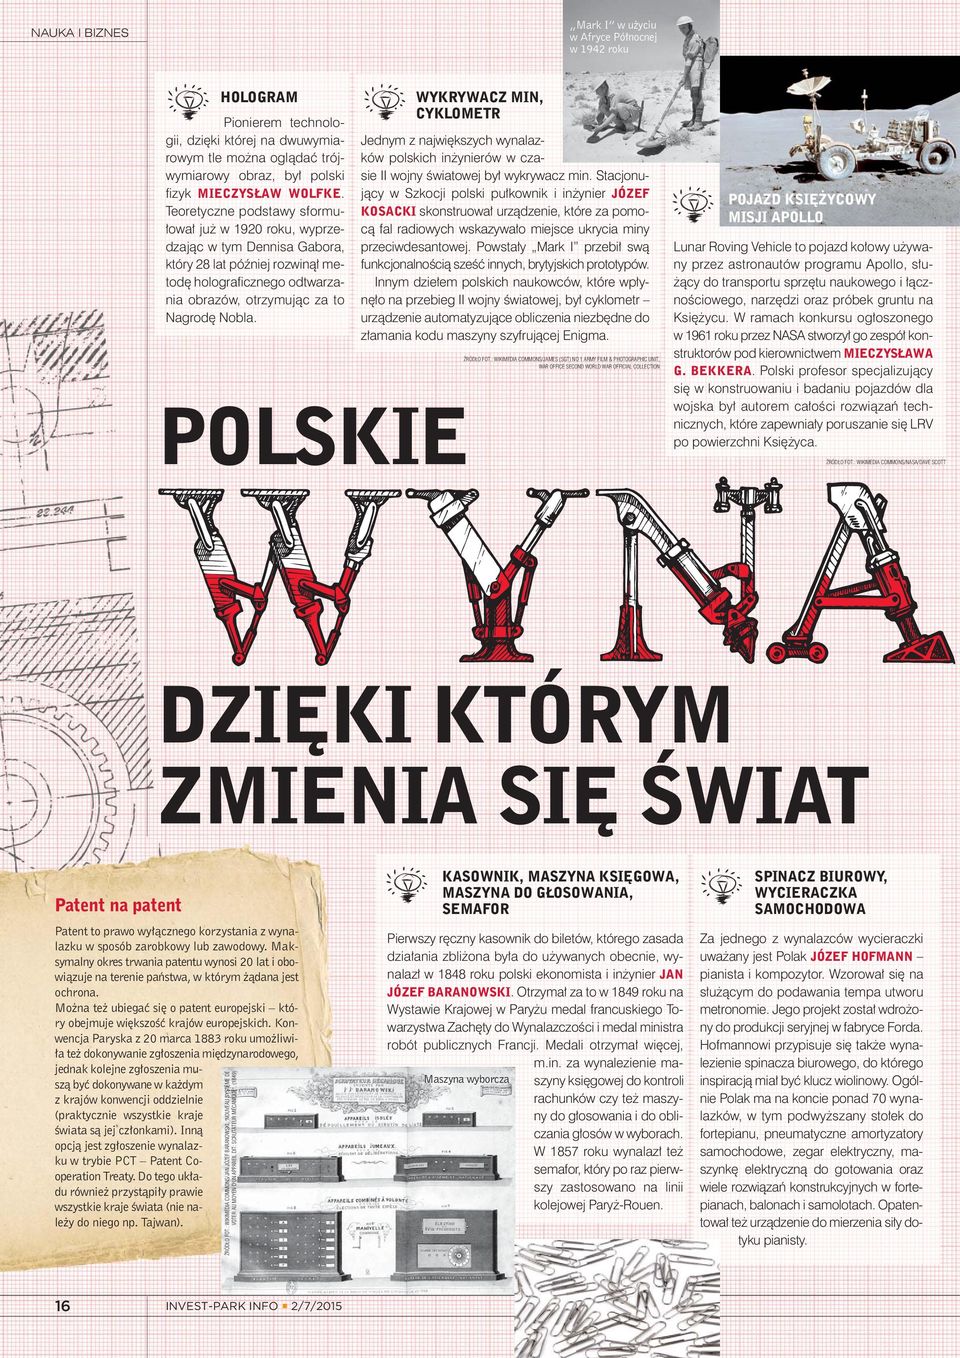 WYKRYWACZ MIN, CYKLOMETR Jednym z największych wynalazków polskich inżynierów w czasie II wojny światowej był wykrywacz min.